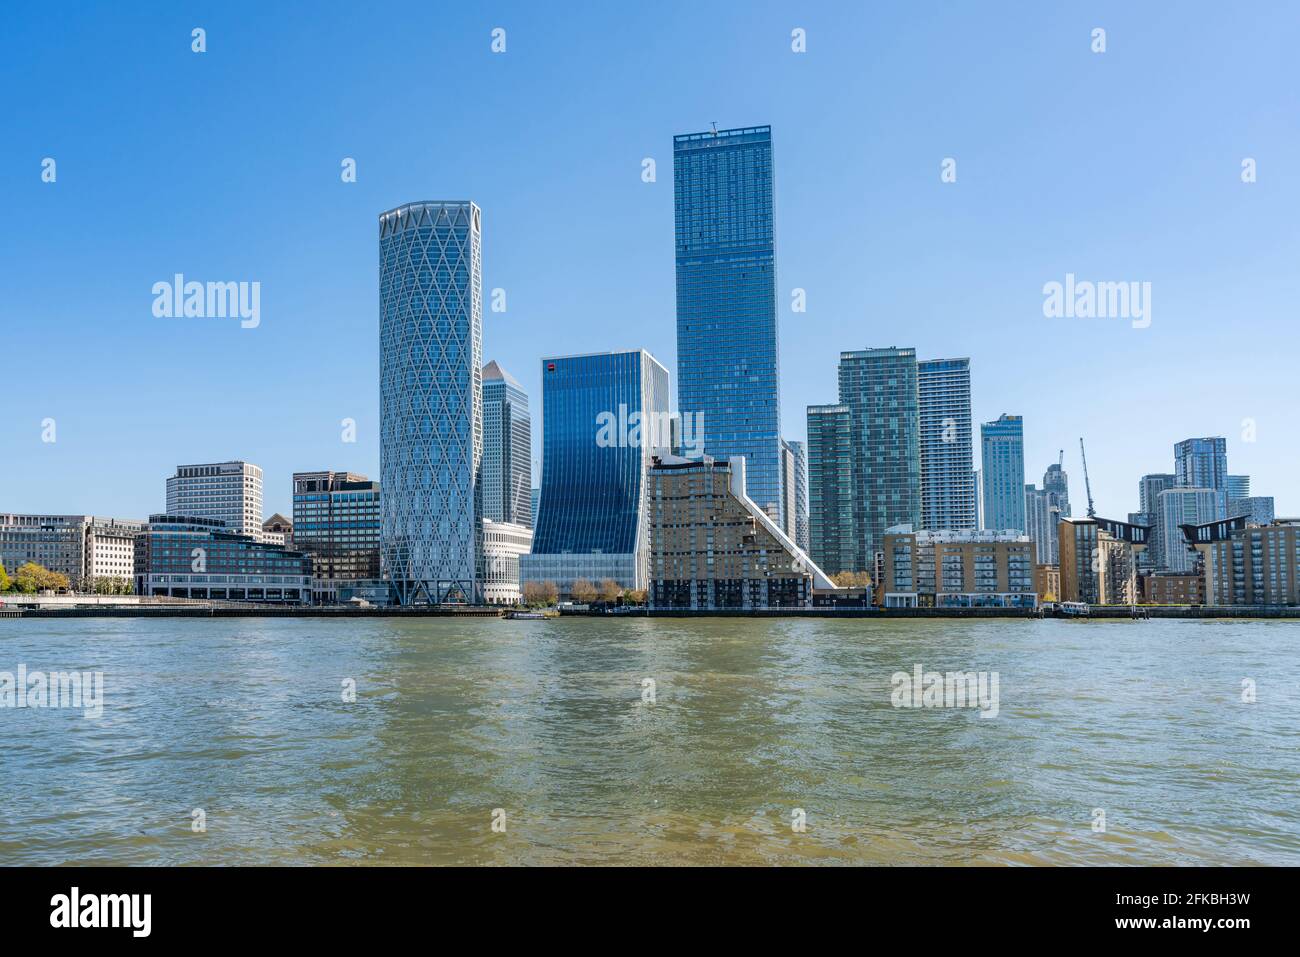 LONDON, Großbritannien - 23. APRIL 2021: Moderne Wolkenkratzer von Canary Wharf, dem Finanzzentrum in London auf der anderen Seite der Themse Stockfoto